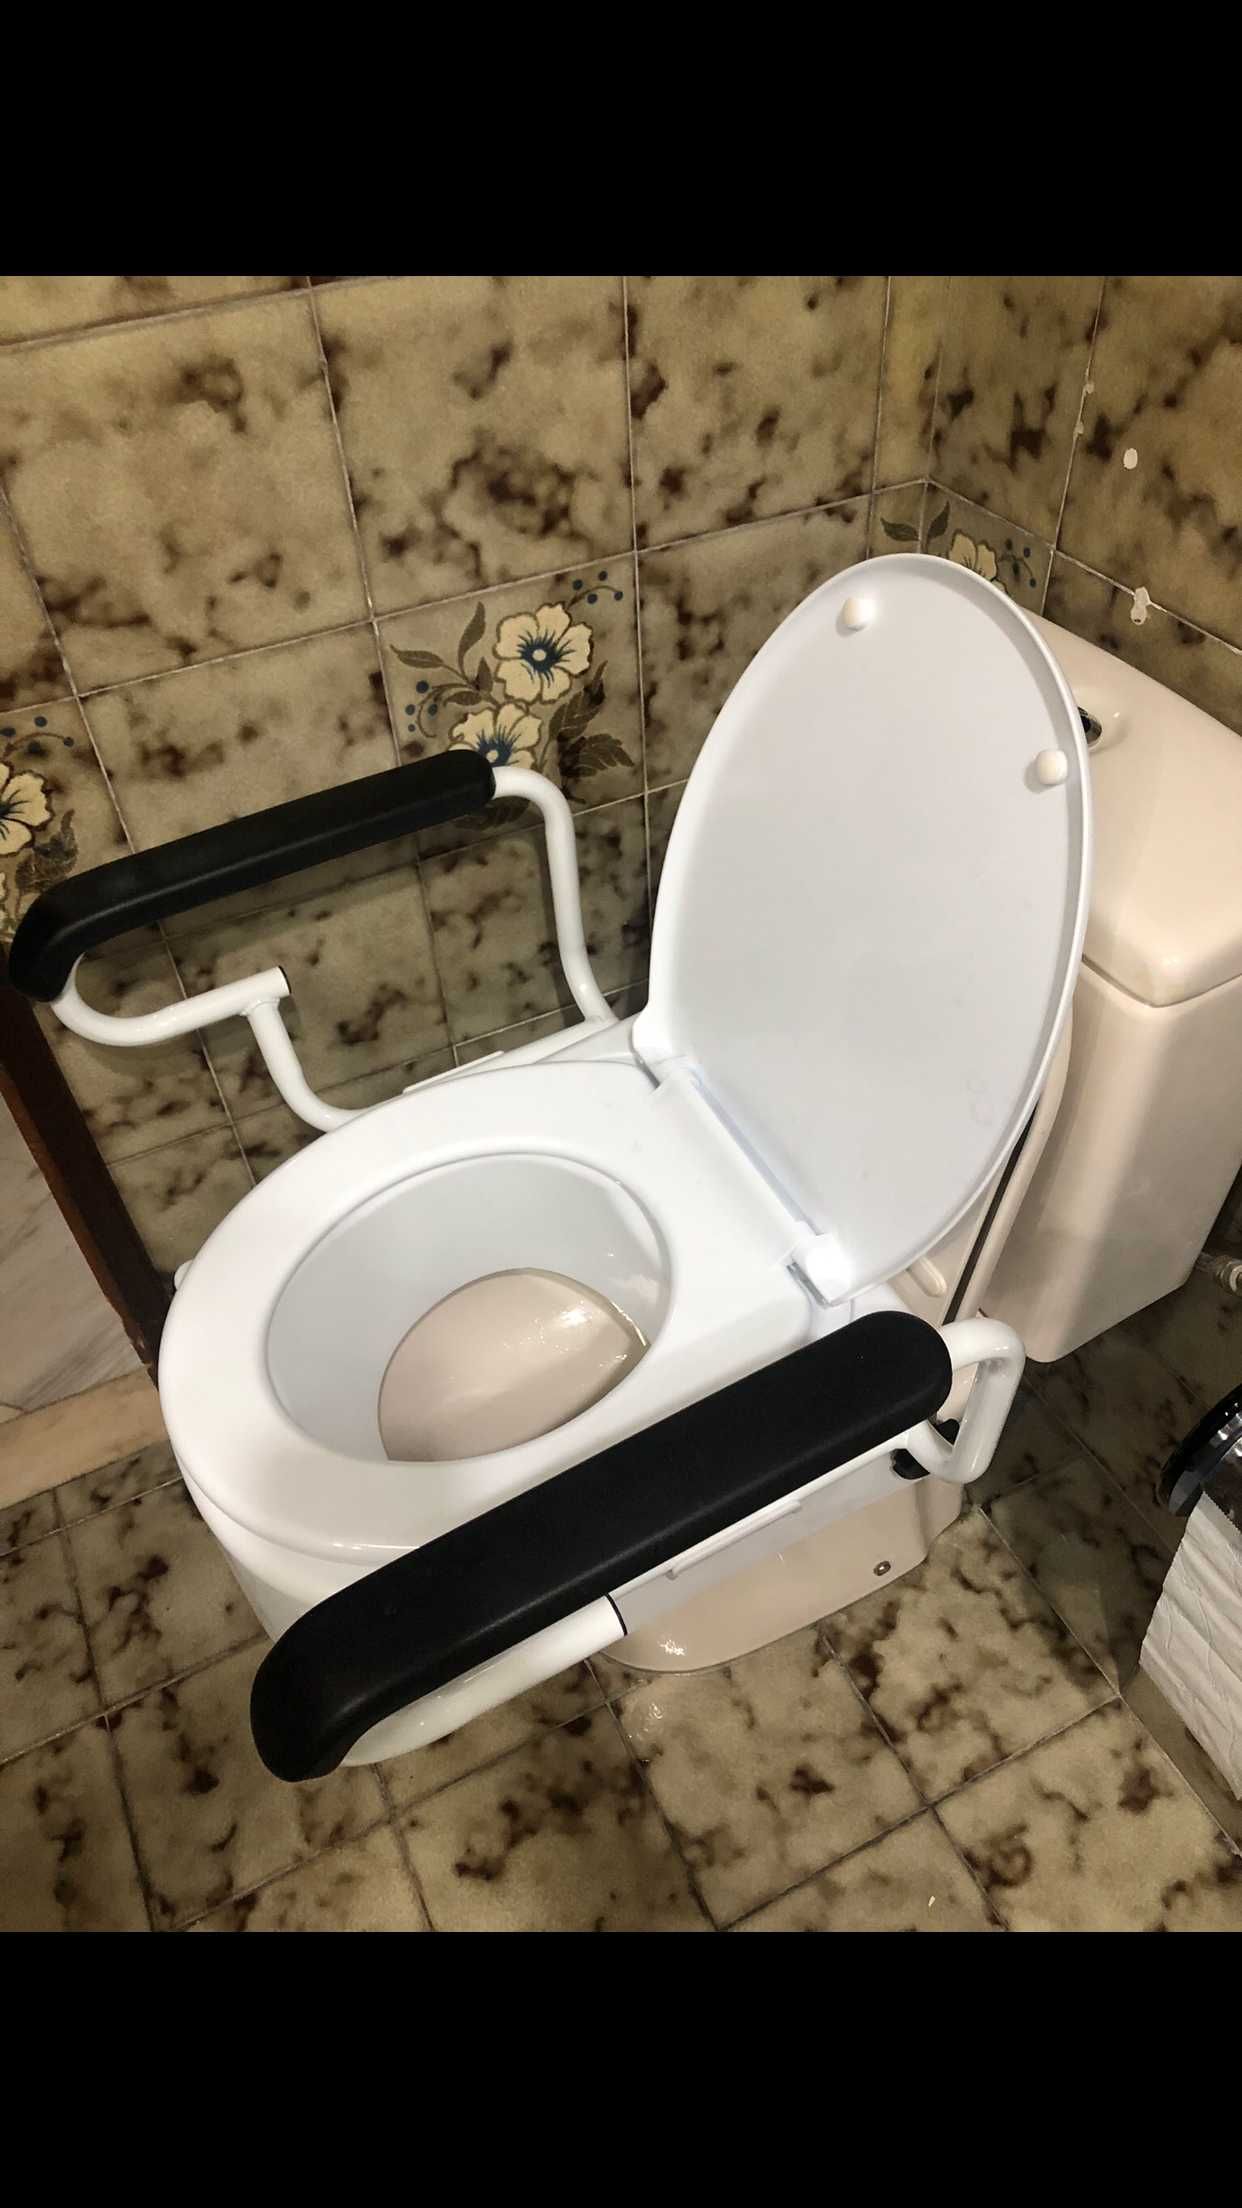 Adaptador sanita WC 17cm amovível, com braços e tampa.